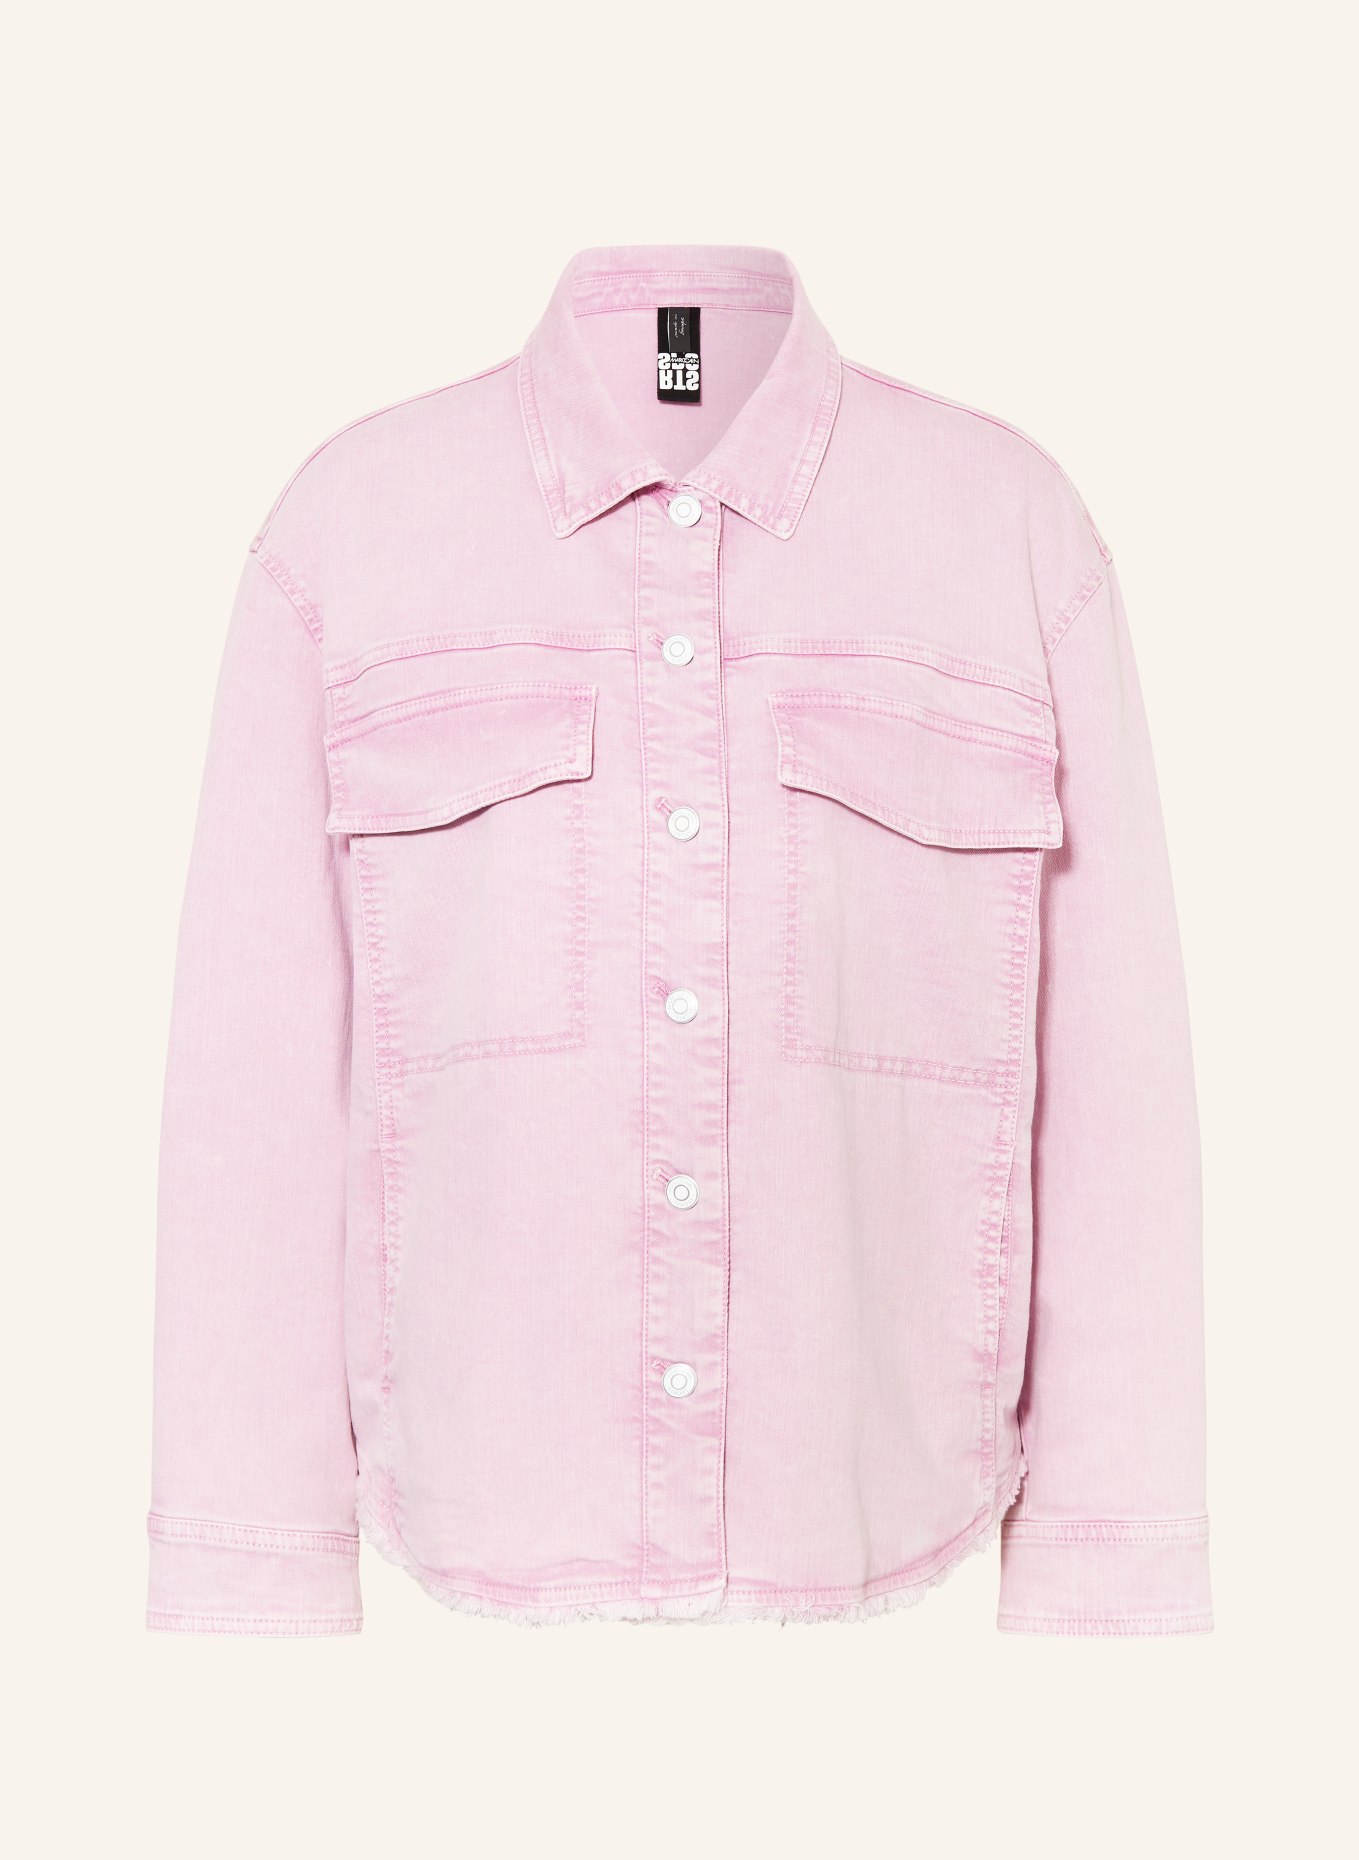 MARC CAIN Jeansbluse, Farbe: 708 bright pink lavender (Bild 1)